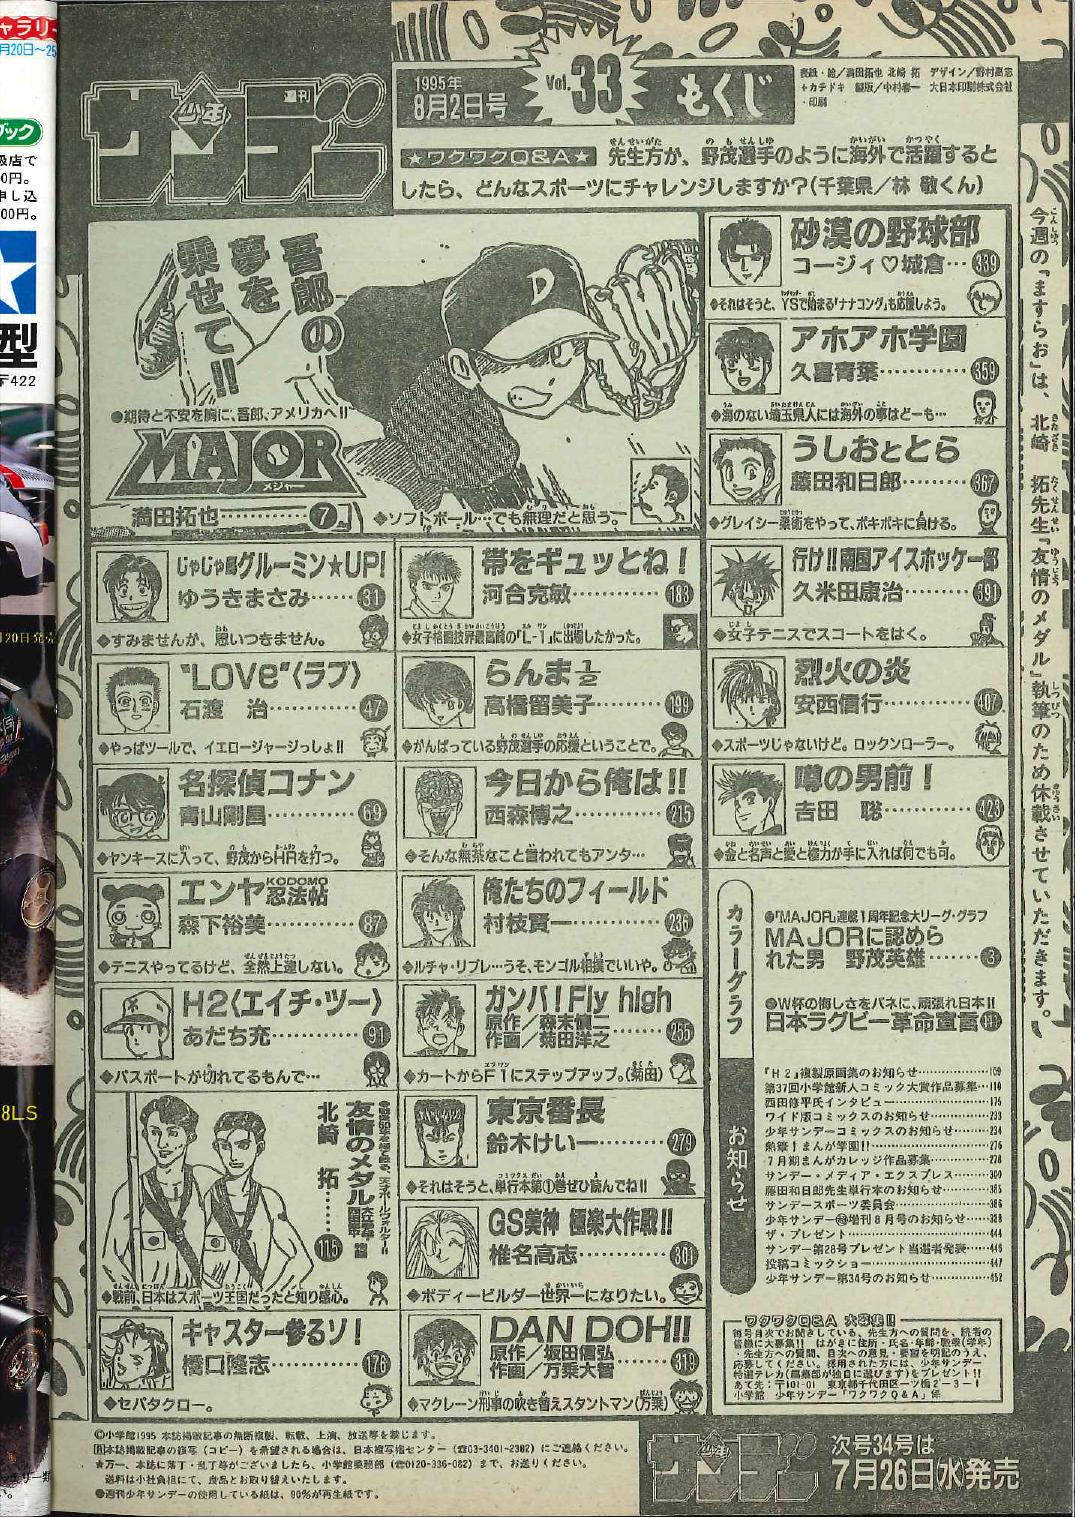 小学館 1995年(平成7年)の漫画雑誌 『週刊少年サンデー1995年(平成7年)33 9533』